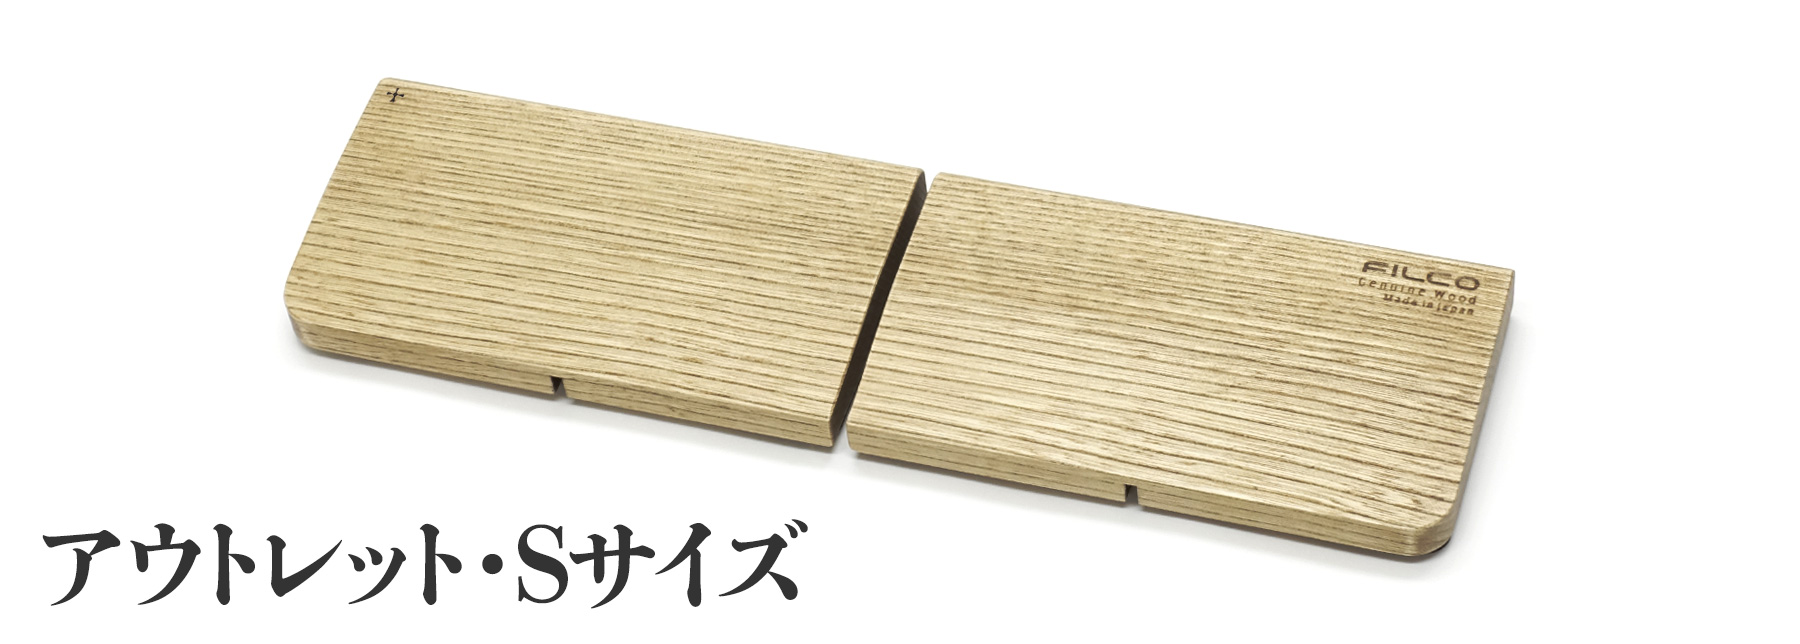 北海道産天然木 FILCO Genuine Wood Wrist Rest S size 分離型(2分割)【小傷有り アウトレット品】 通常価格 3,980円⇒1,001円引き！2,979円